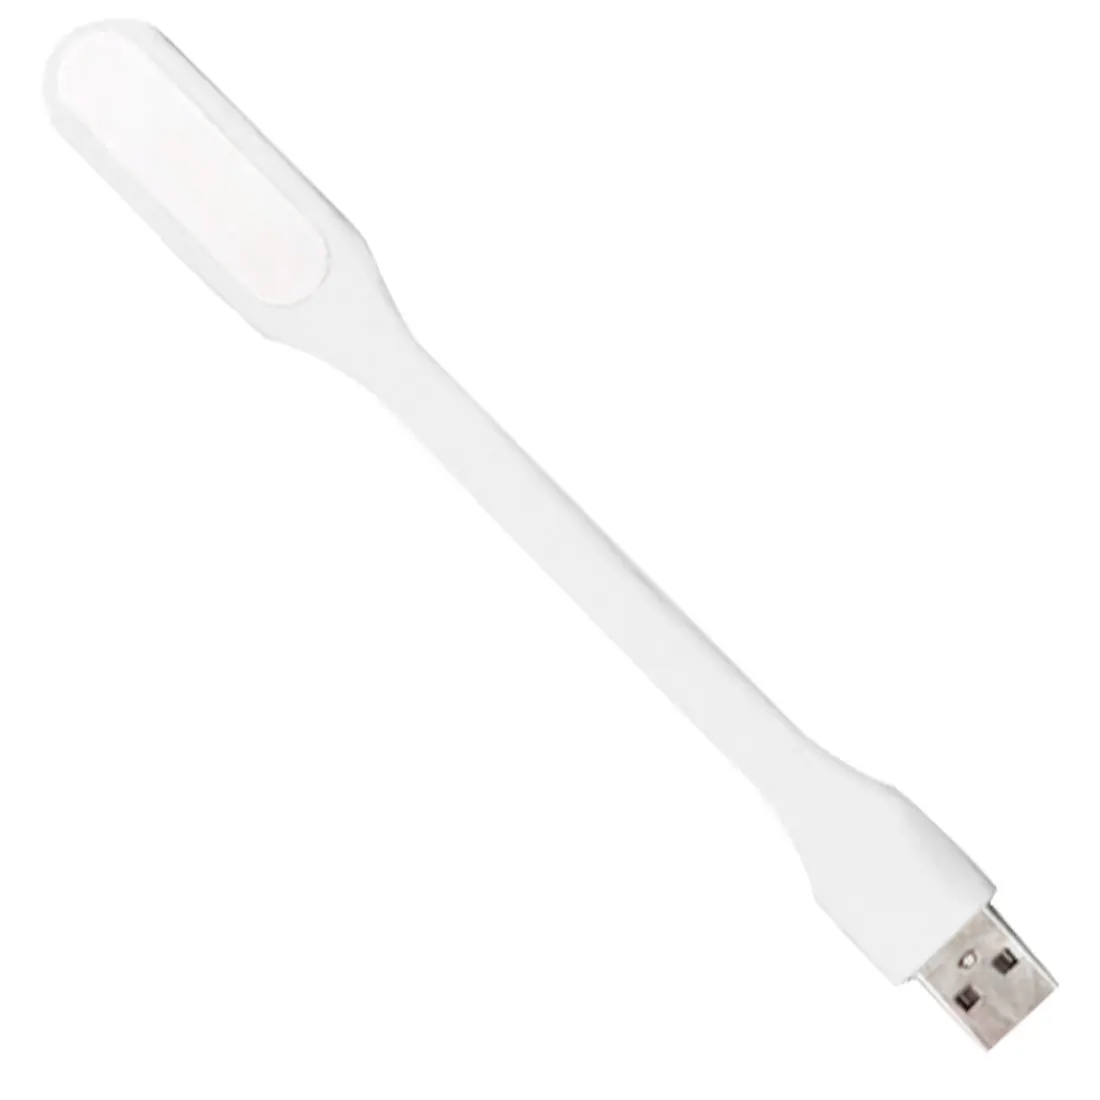 Мини Гибкий светодиодный светильник USB ночной Светильник s настольная лампа для чтения книга светильник гаджеты usb глаз ручной светильник для power Bank PC ноутбук Noteboo - Испускаемый цвет: White